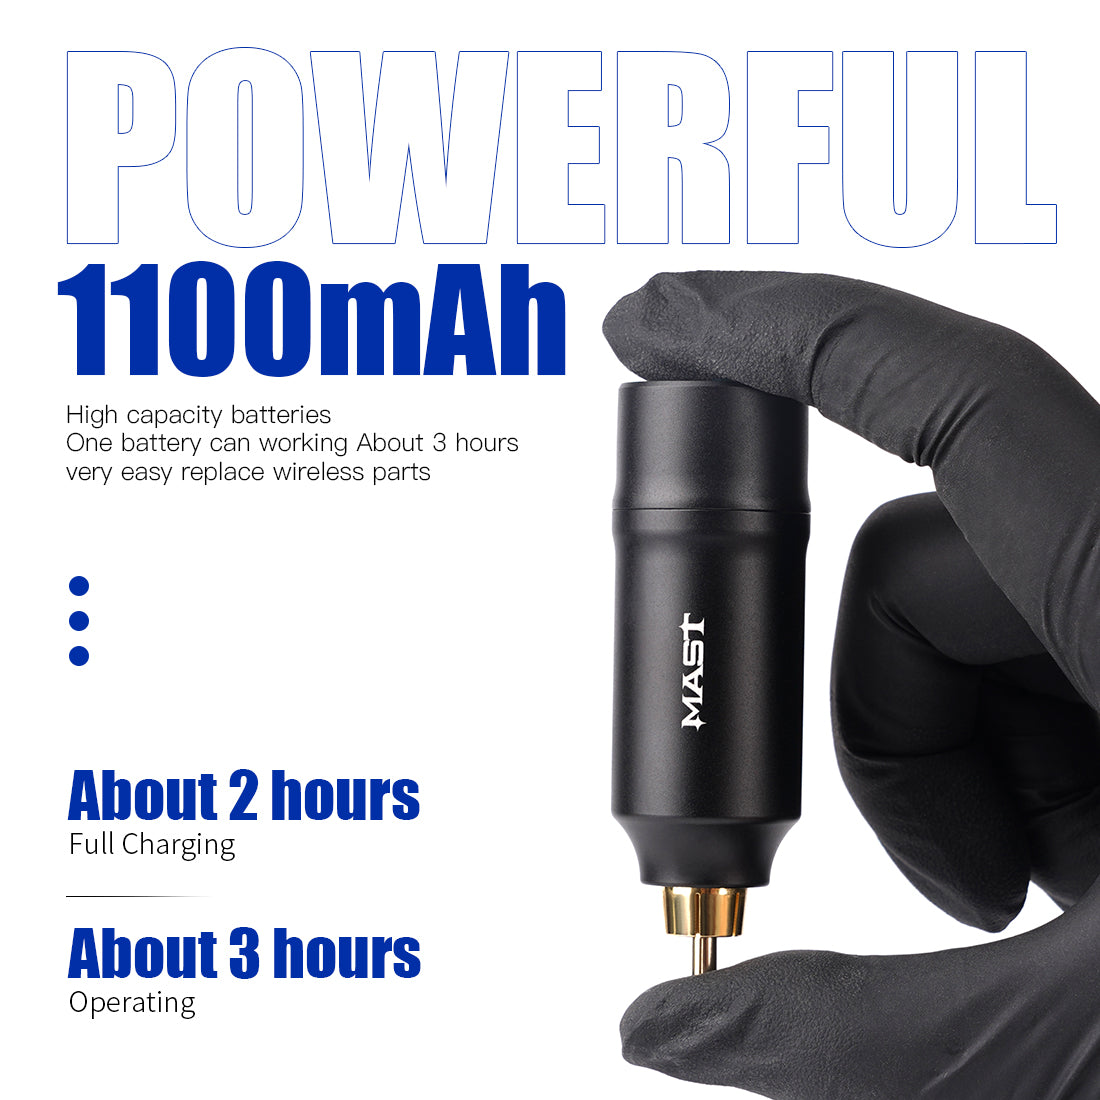 Mast S9 Coreless Powerful Motor Tattoo Pen Kit